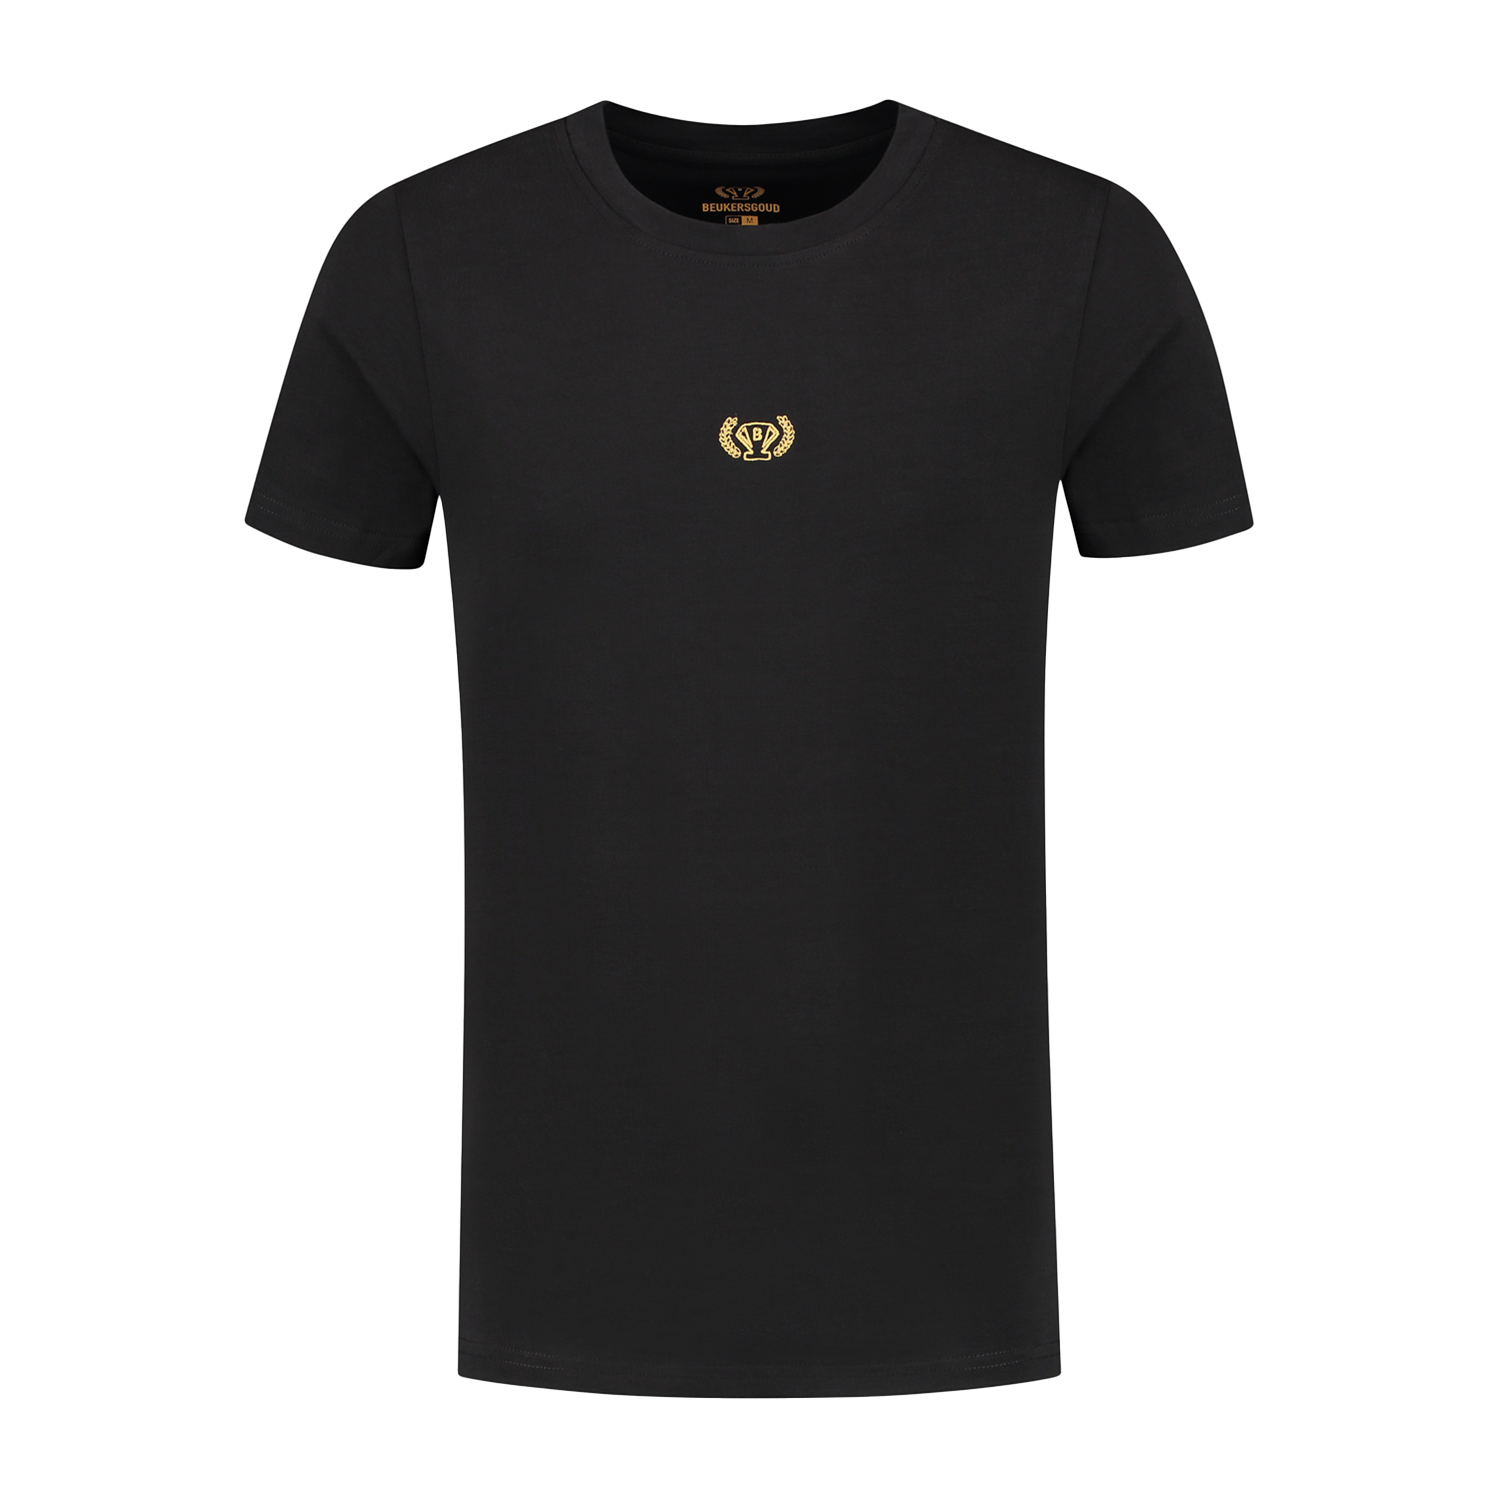 Beukers Goud T-shirt - Zwart